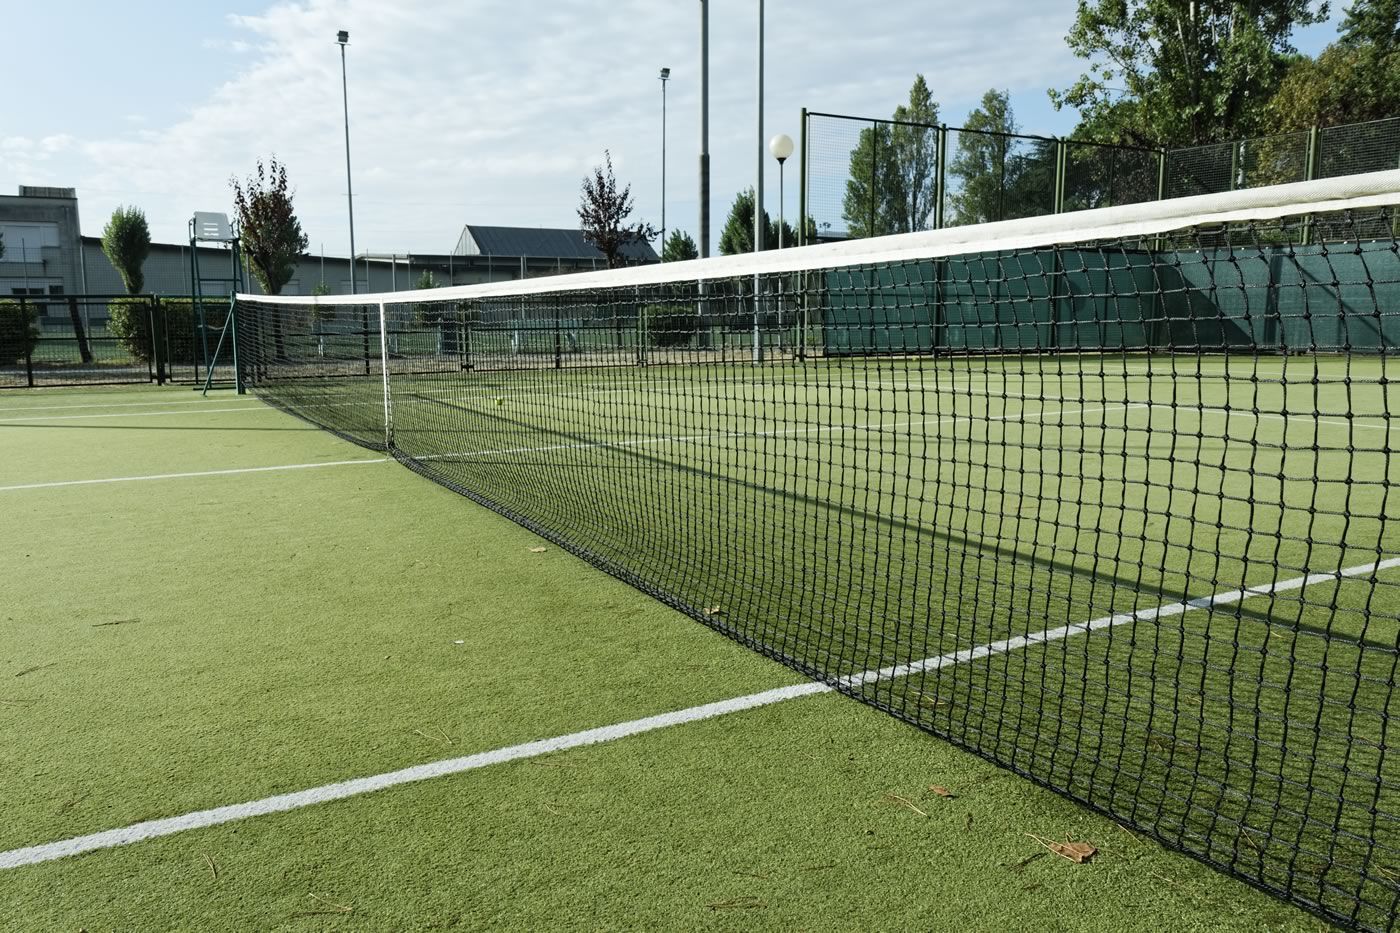 arficital tennis court surface by cy artificial grass